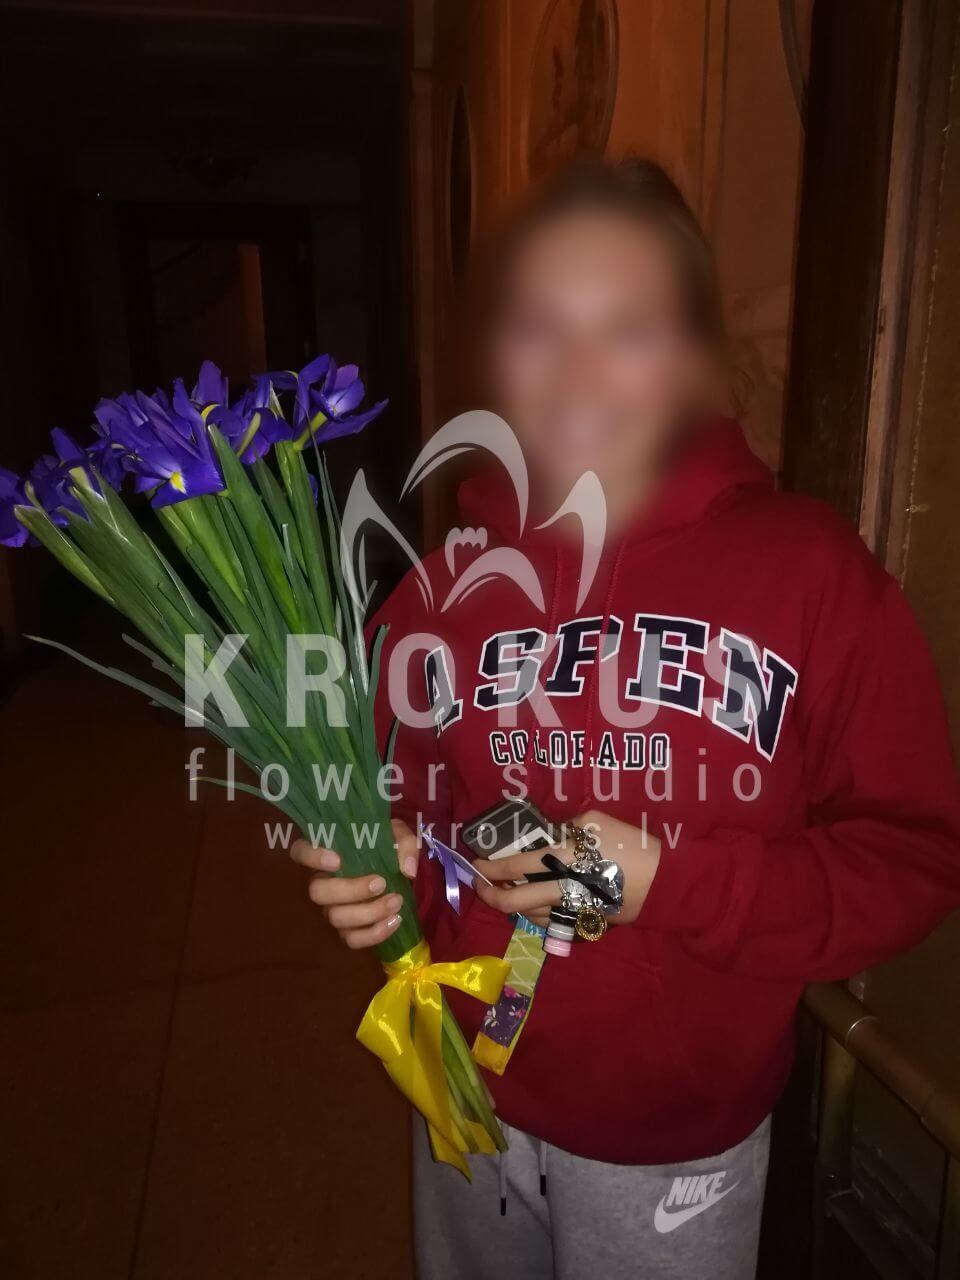 Доставка цветов в город Рига (ирисы)